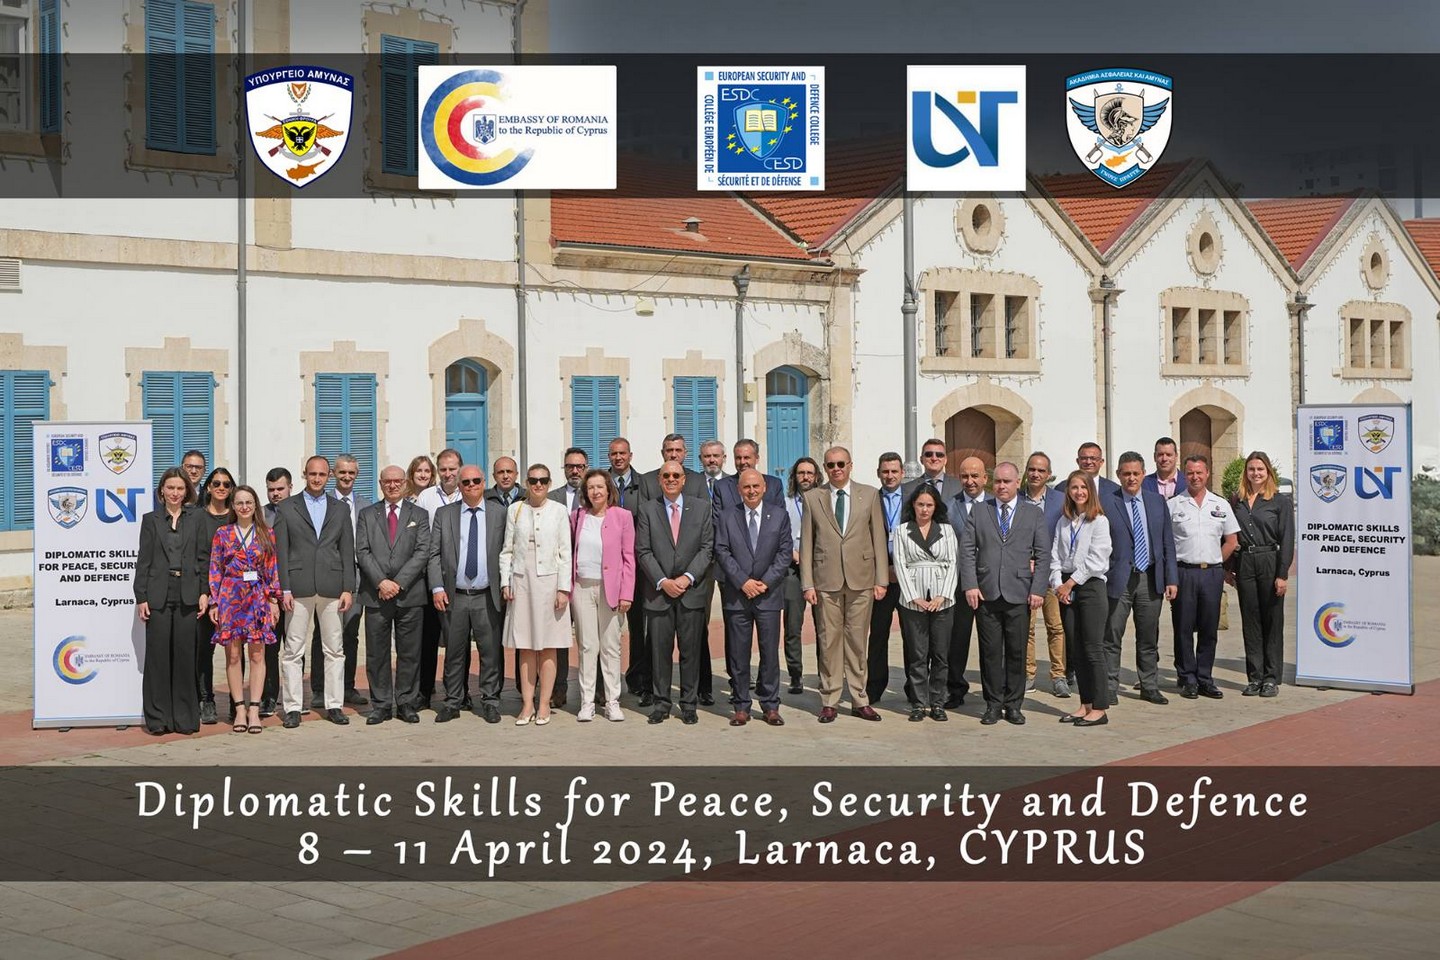 Άρχισε στη Λάρνακα το σεμινάριο για τις διπλωματικές δεξιότητες για Ειρήνη, Ασφάλεια και Άμυνα